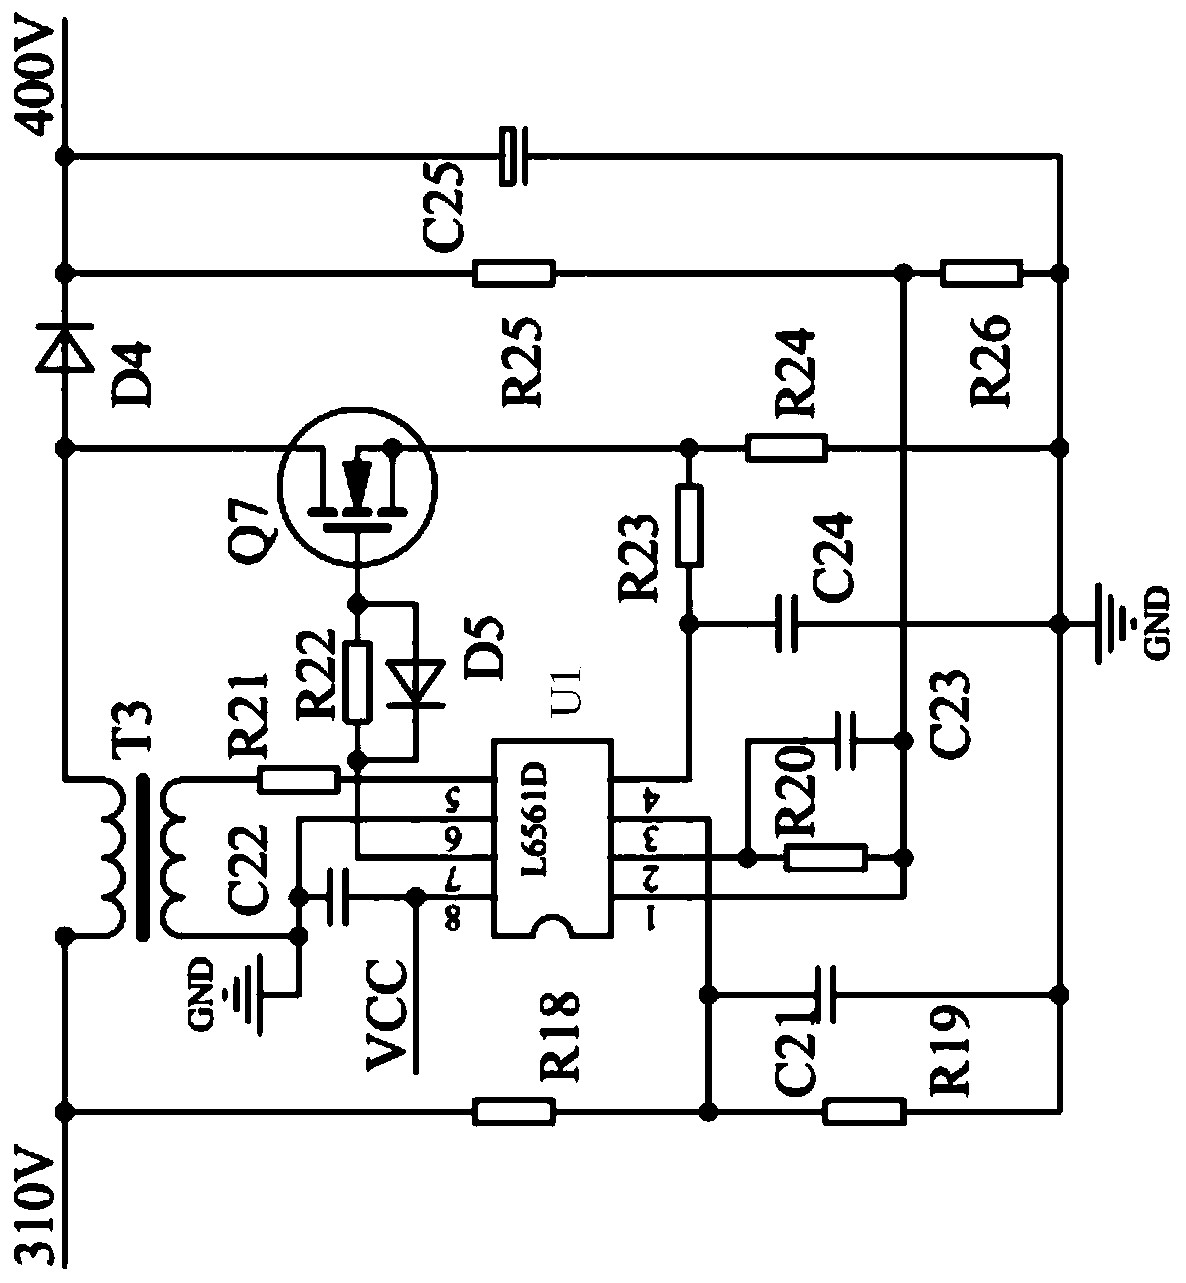 Low power hid lamp drive circuit